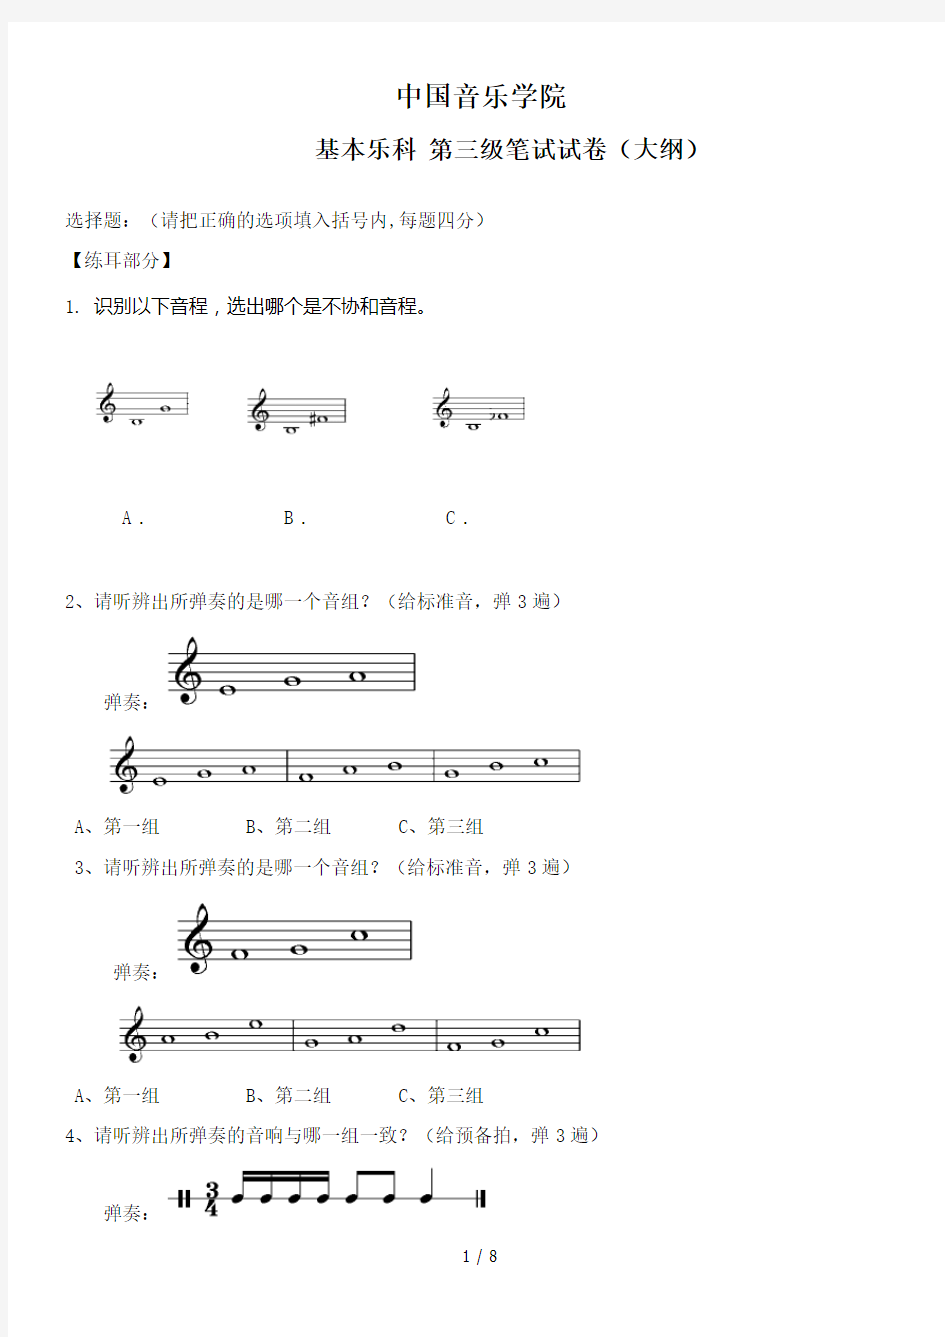 中国音乐学院乐理考级大纲(三级)